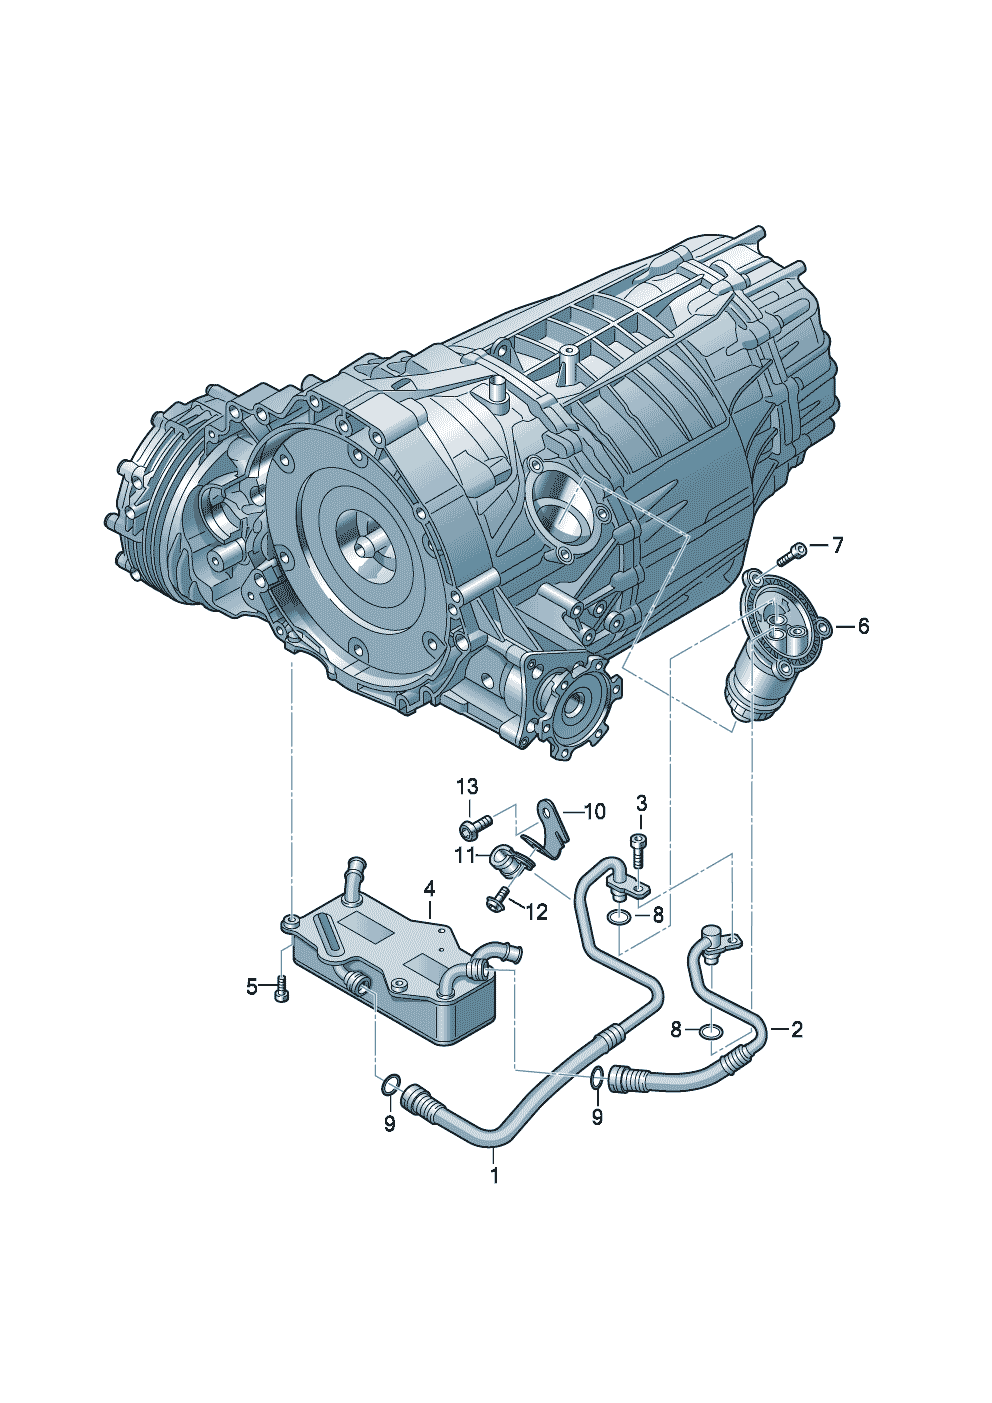 Напорный маслопровод для охла-<br>ждения масла коробки передачдля бесступенчатой<br>АКП 0AW - Audi A7 Sportback - a7